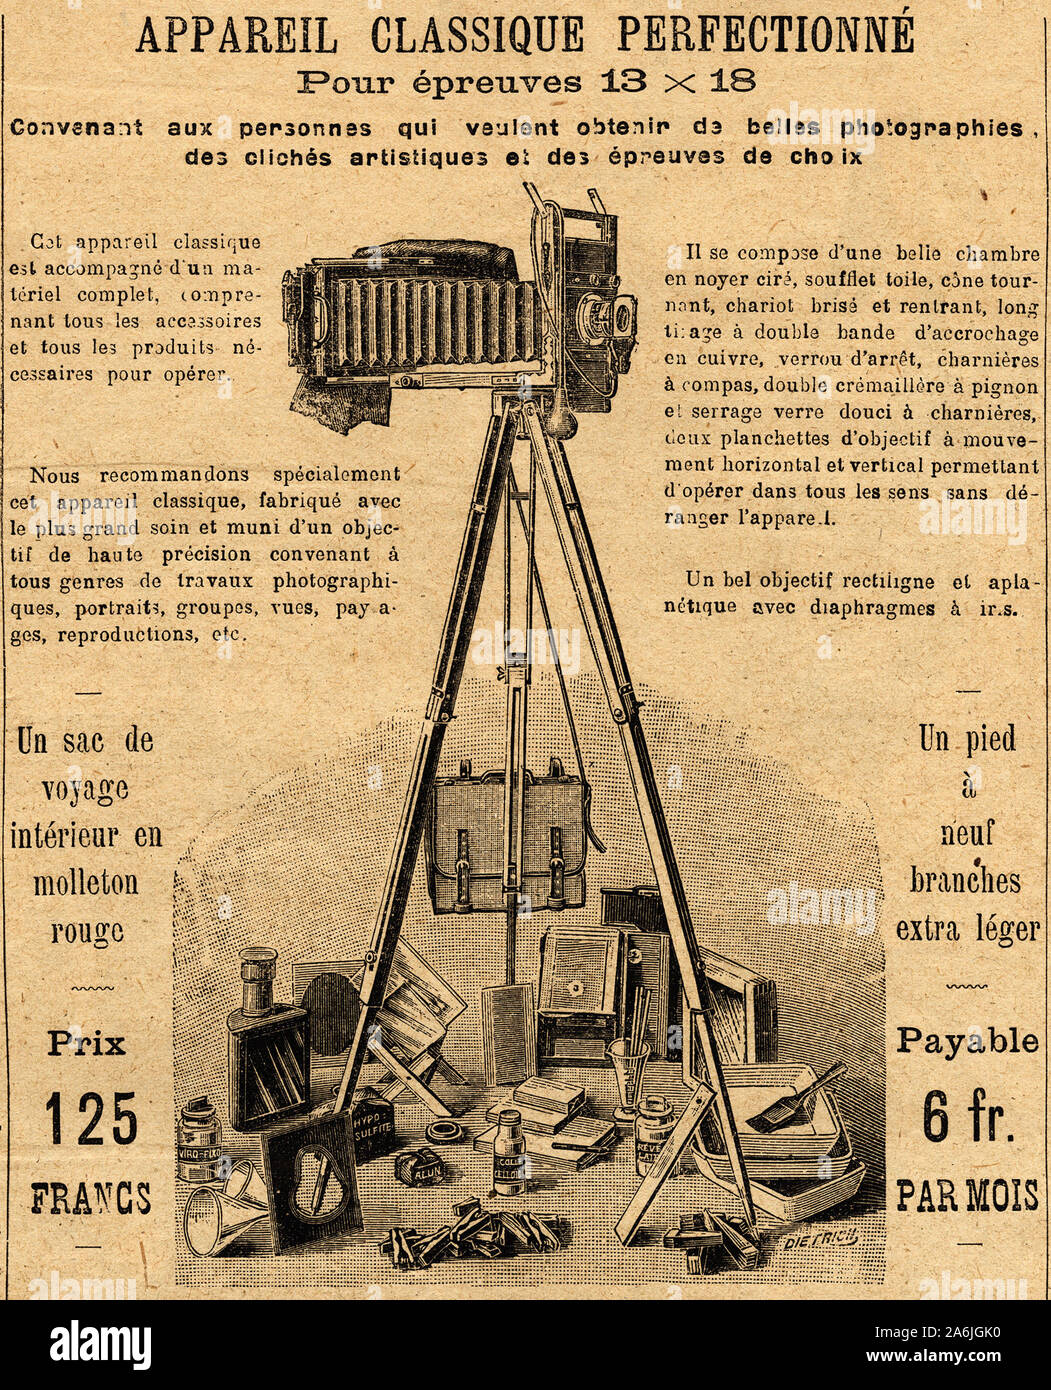 Publicite pour un appareil photo avec tout ses accessoires. Gravure in "Le  petit journal" 14/7/1901 Stock Photo - Alamy